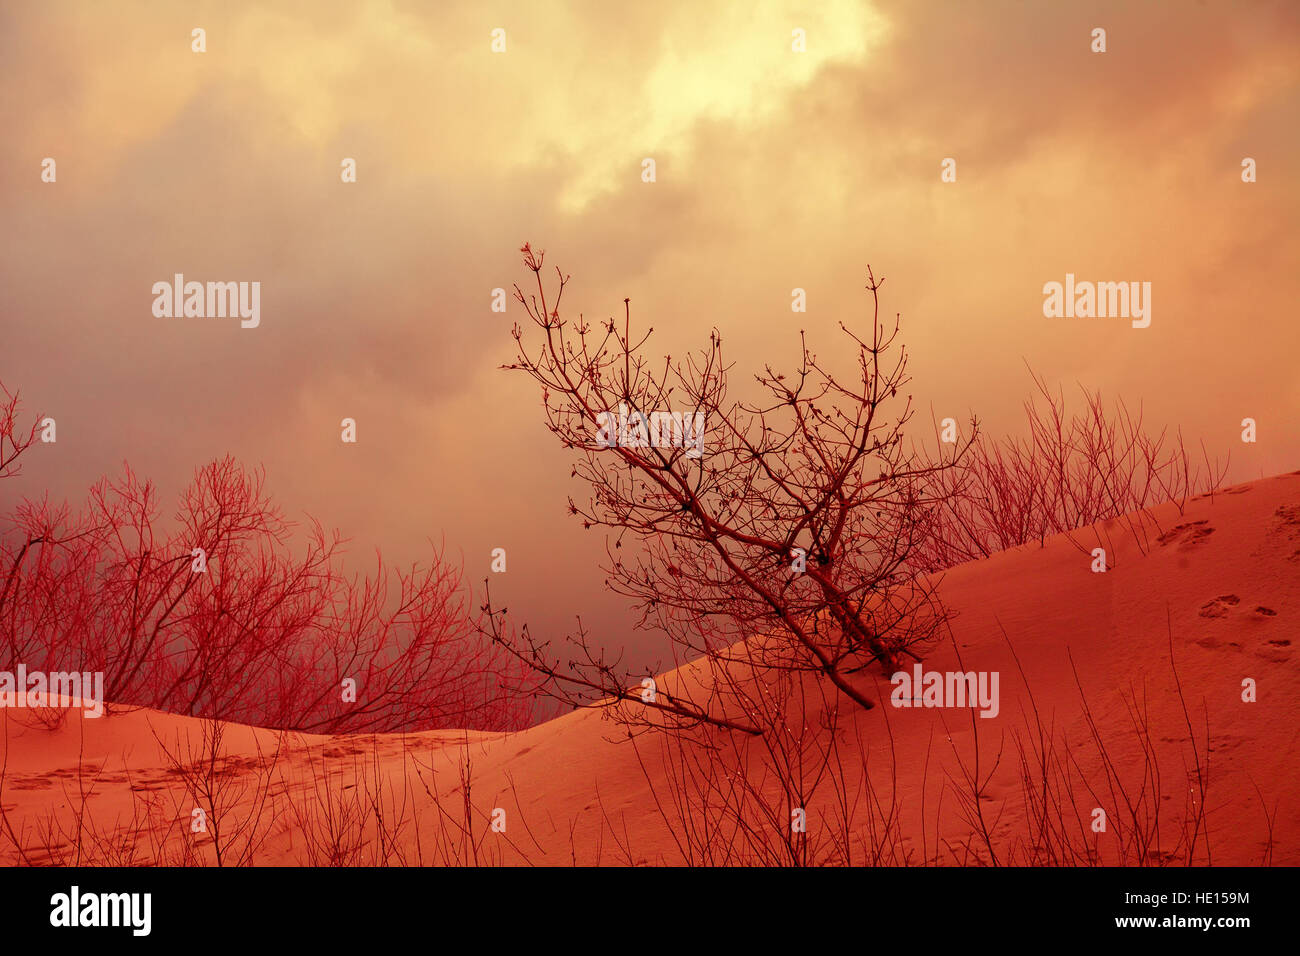 Drammatico paesaggio autunnale con cordoni di dune sabbiose, alberi e nuvoloso cielo tempestoso Foto Stock